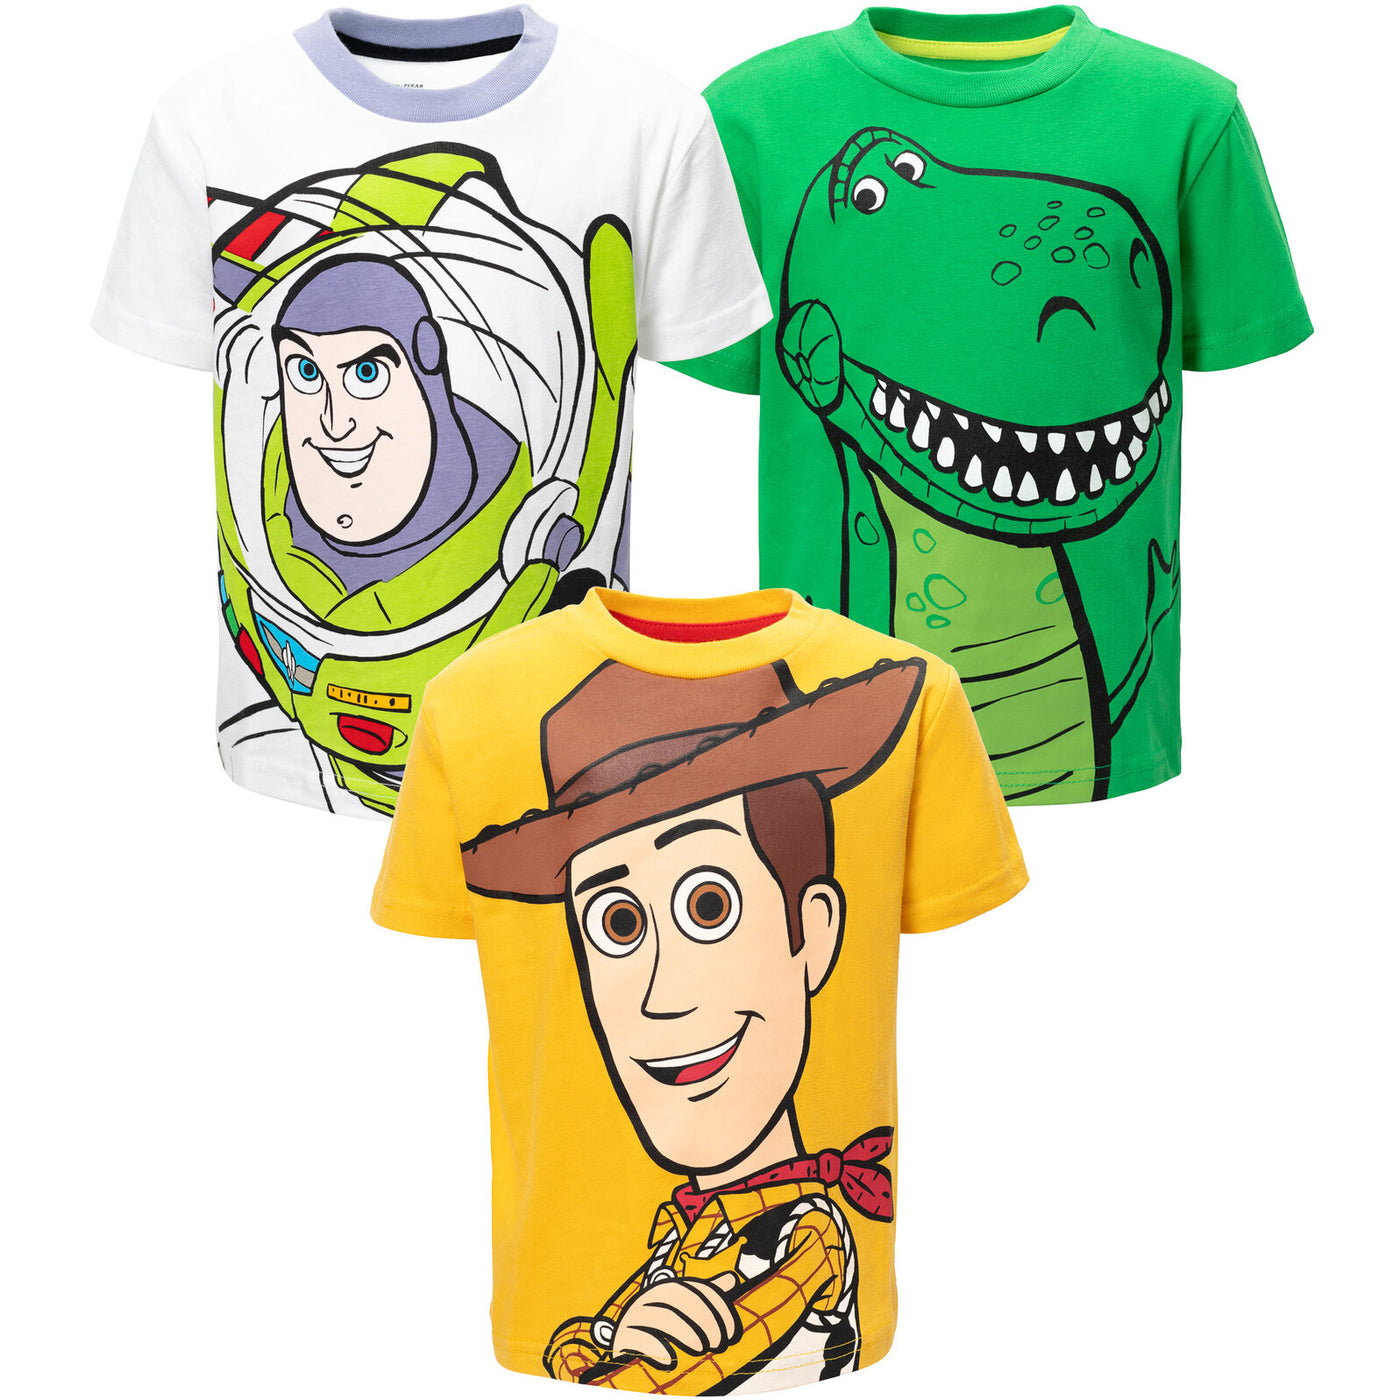 Pack de 3 camisetas gráficas de Disney Pixar